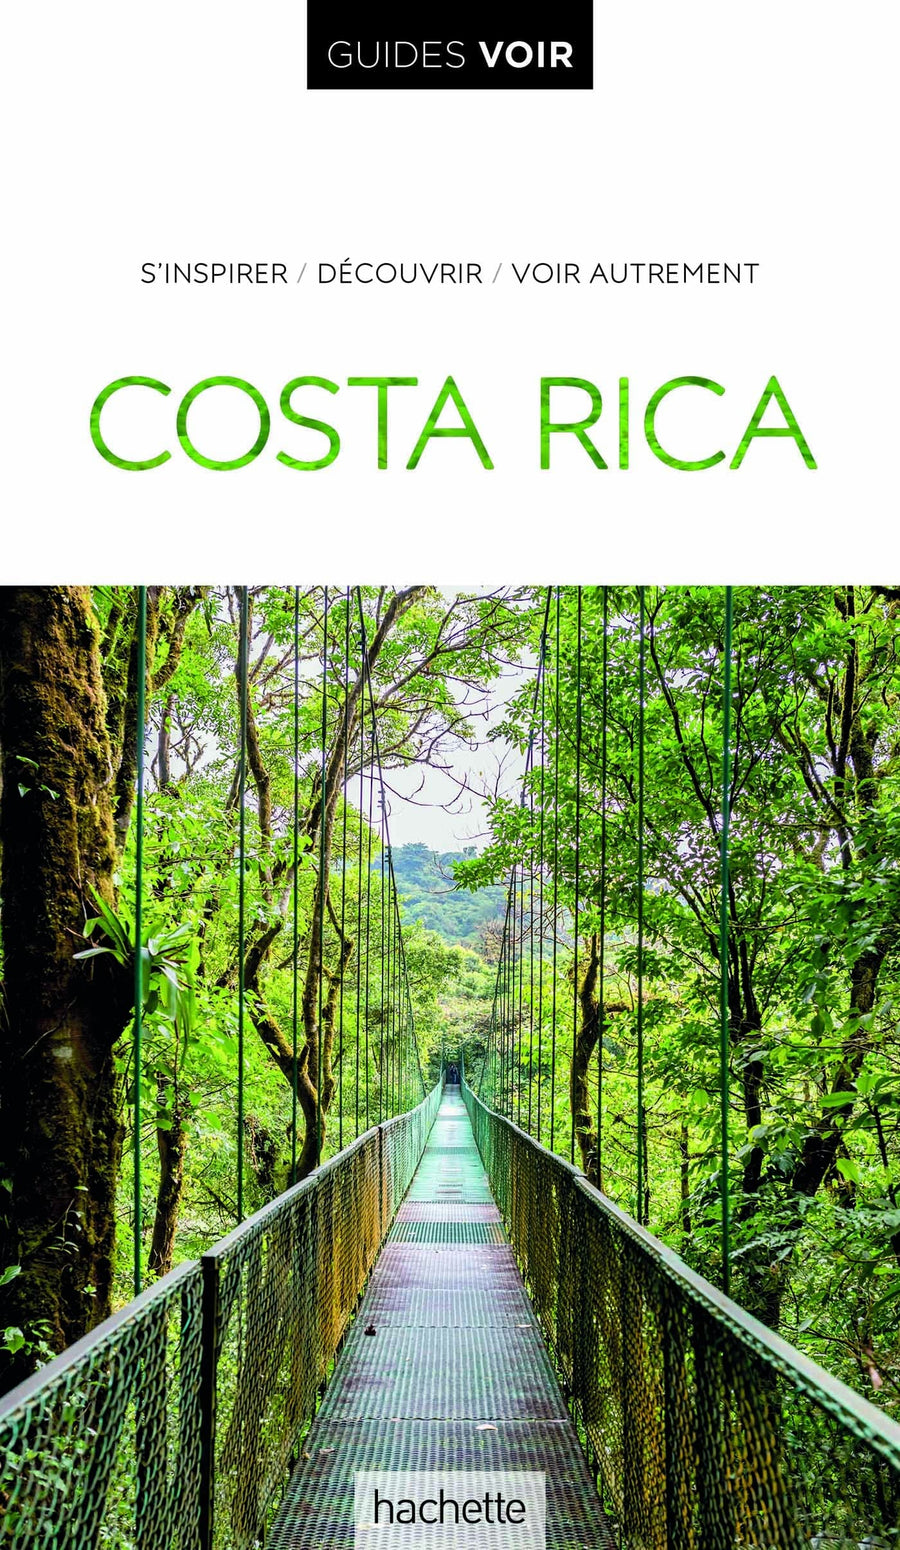 Guide de voyage - Costa Rica - Édition 2022 | Guides Voir guide de voyage Guides Voir 